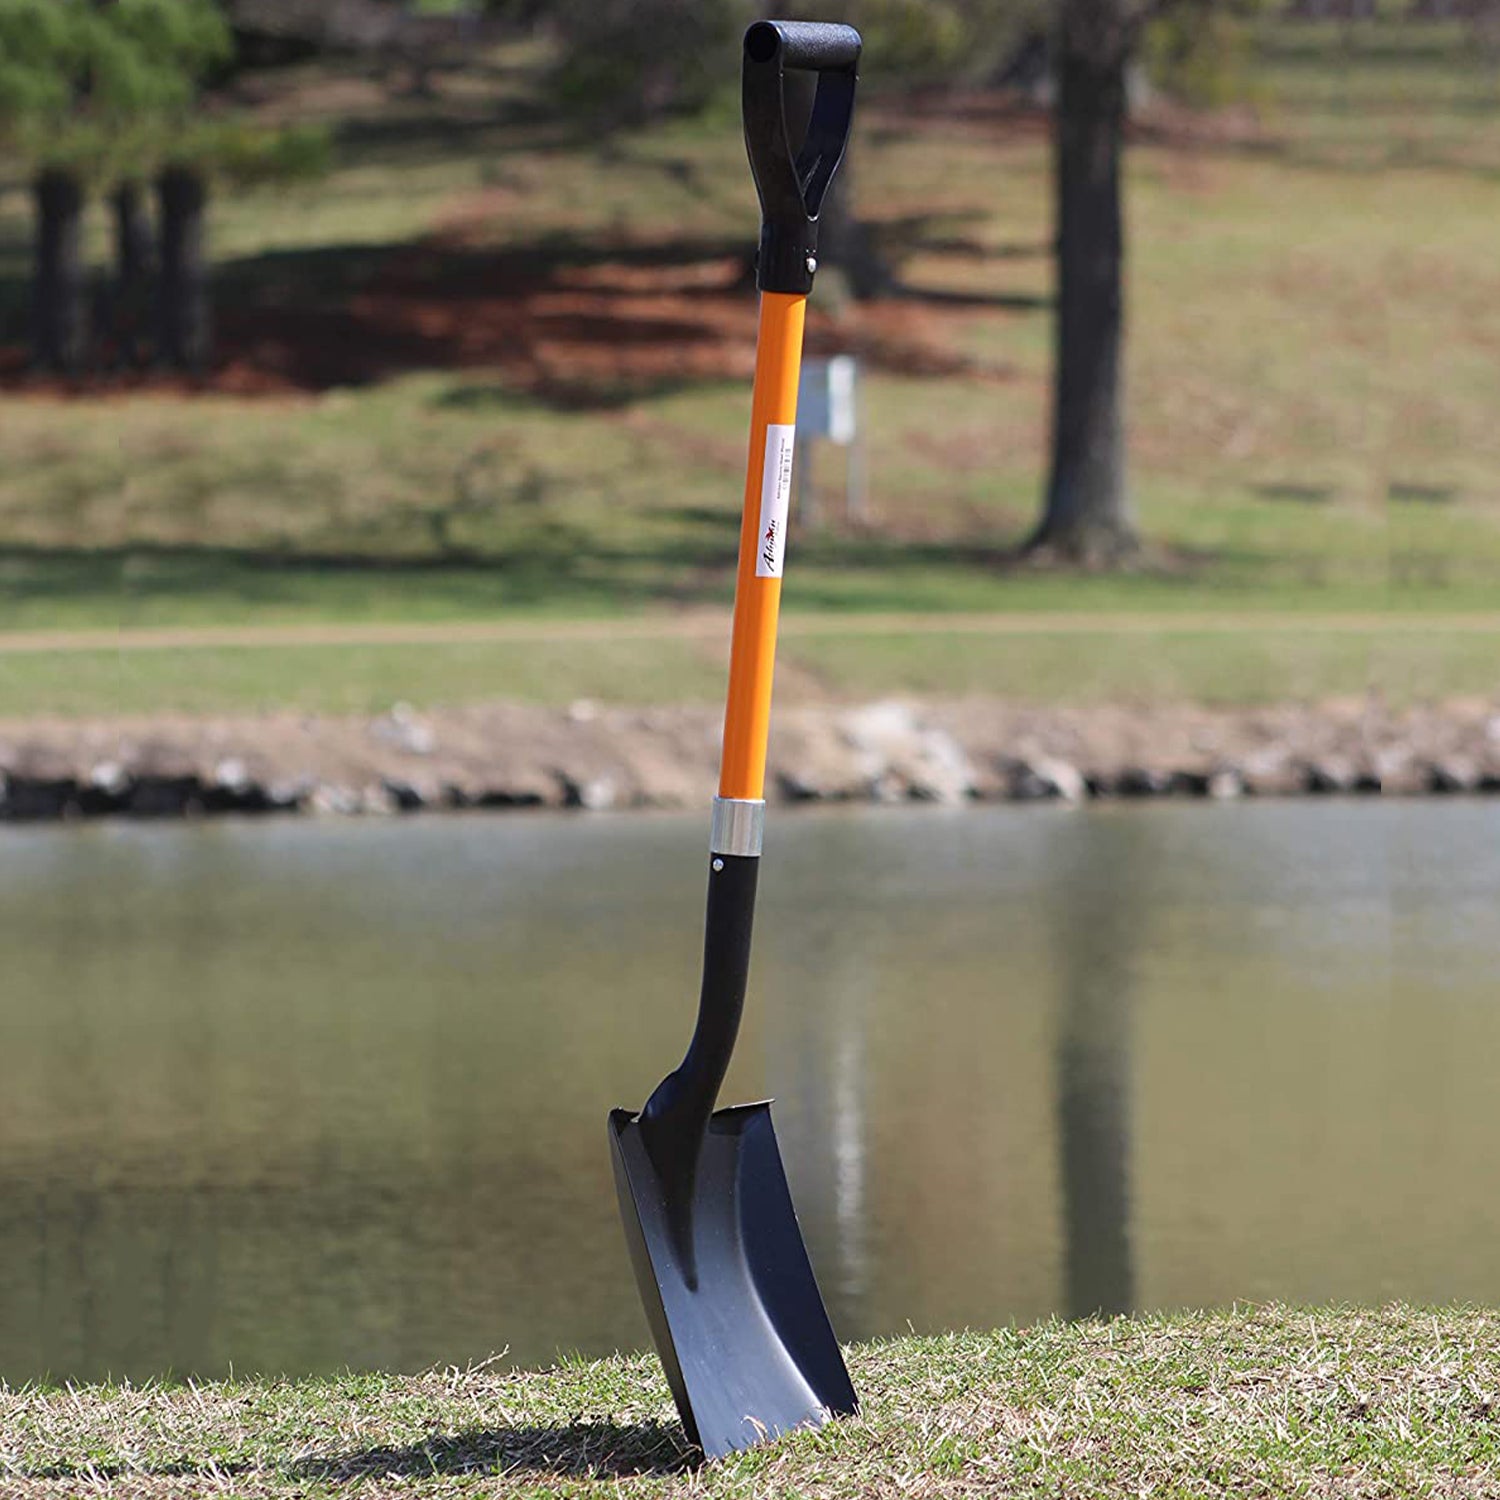 Ashman Square Shovel (Large) – (2 Pack) – 41 Inches Long D Handle Grip –  Ashman Online